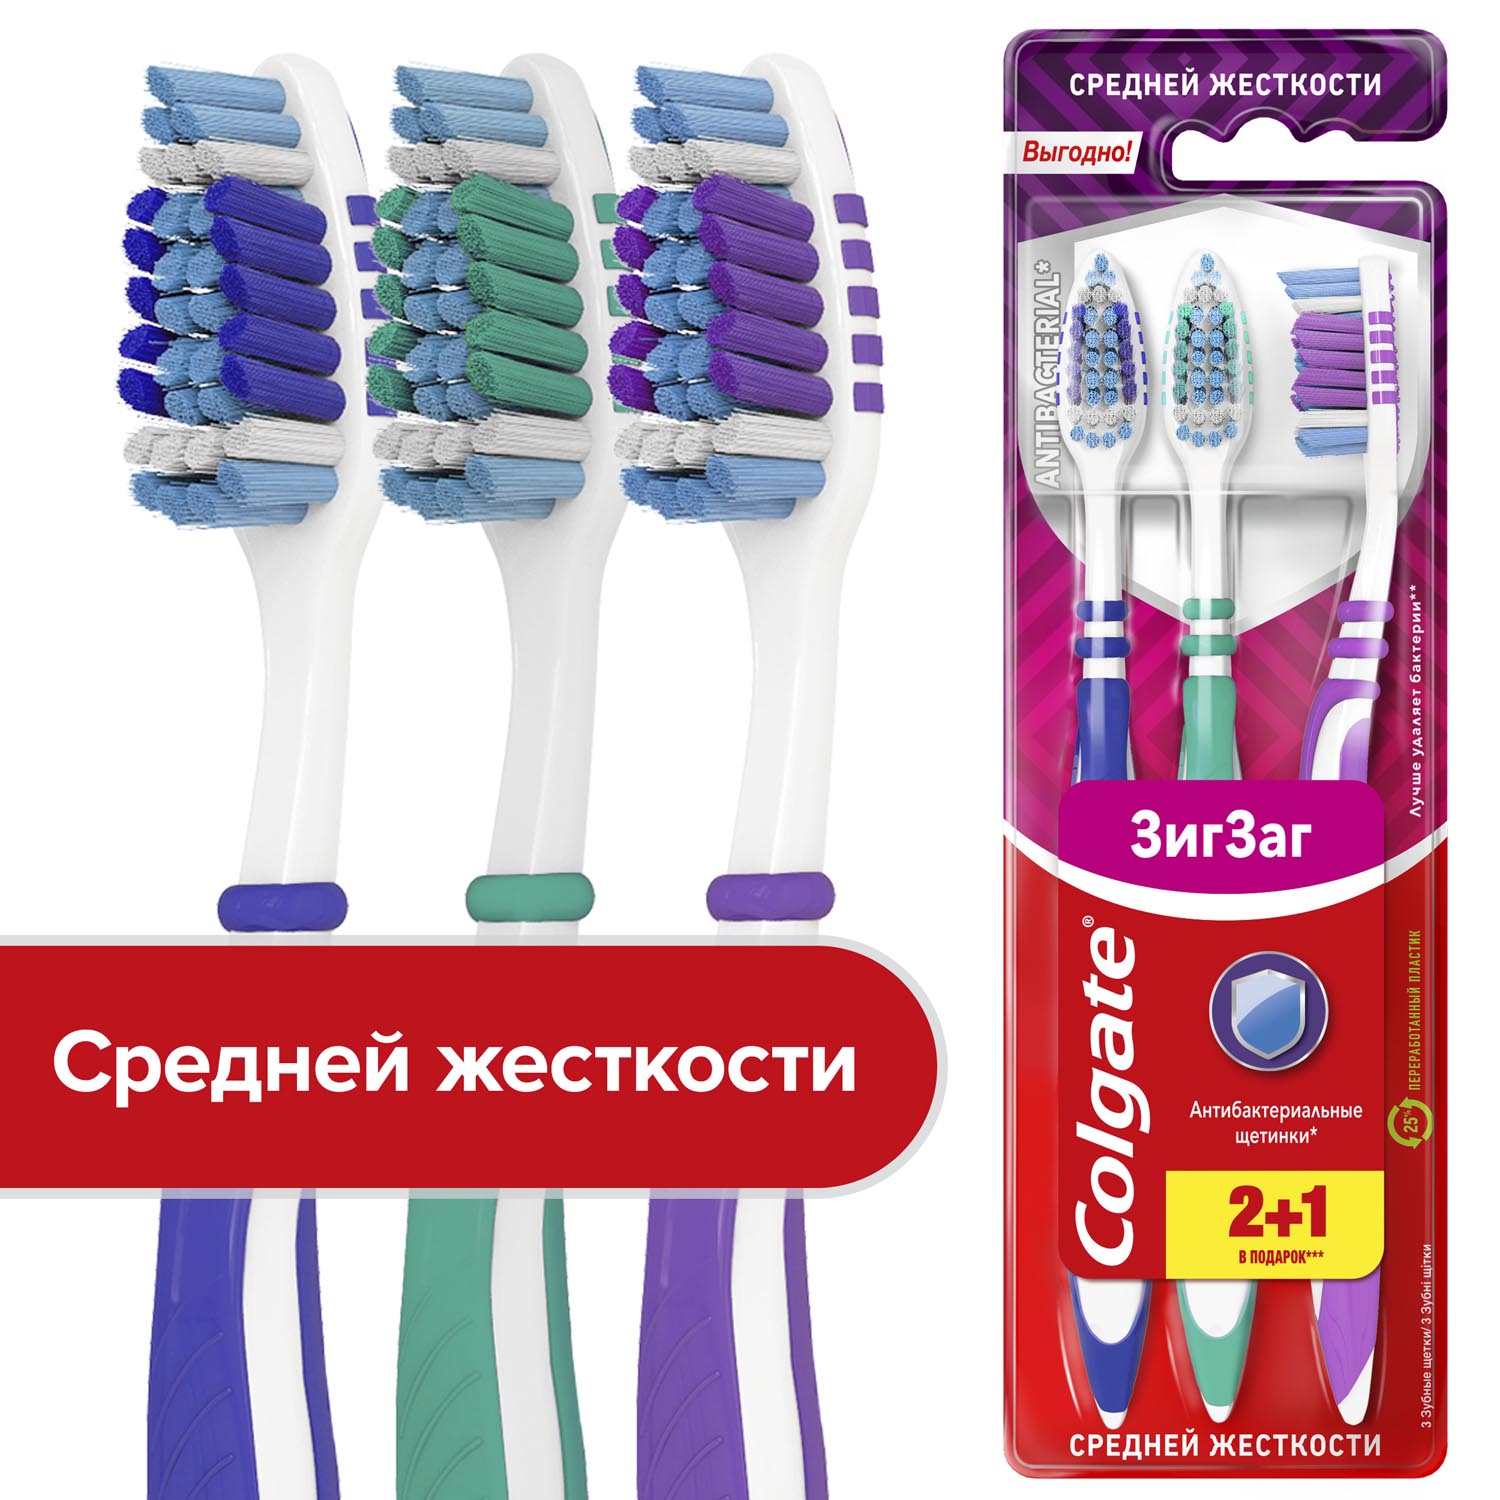 Зубная щетка Colgate Зиг Заг многофункциональная, средней жесткости, промоупаковка 2+1 marvis зубная щетка c нейлоновой щетиной средней жесткости toothbrush medium